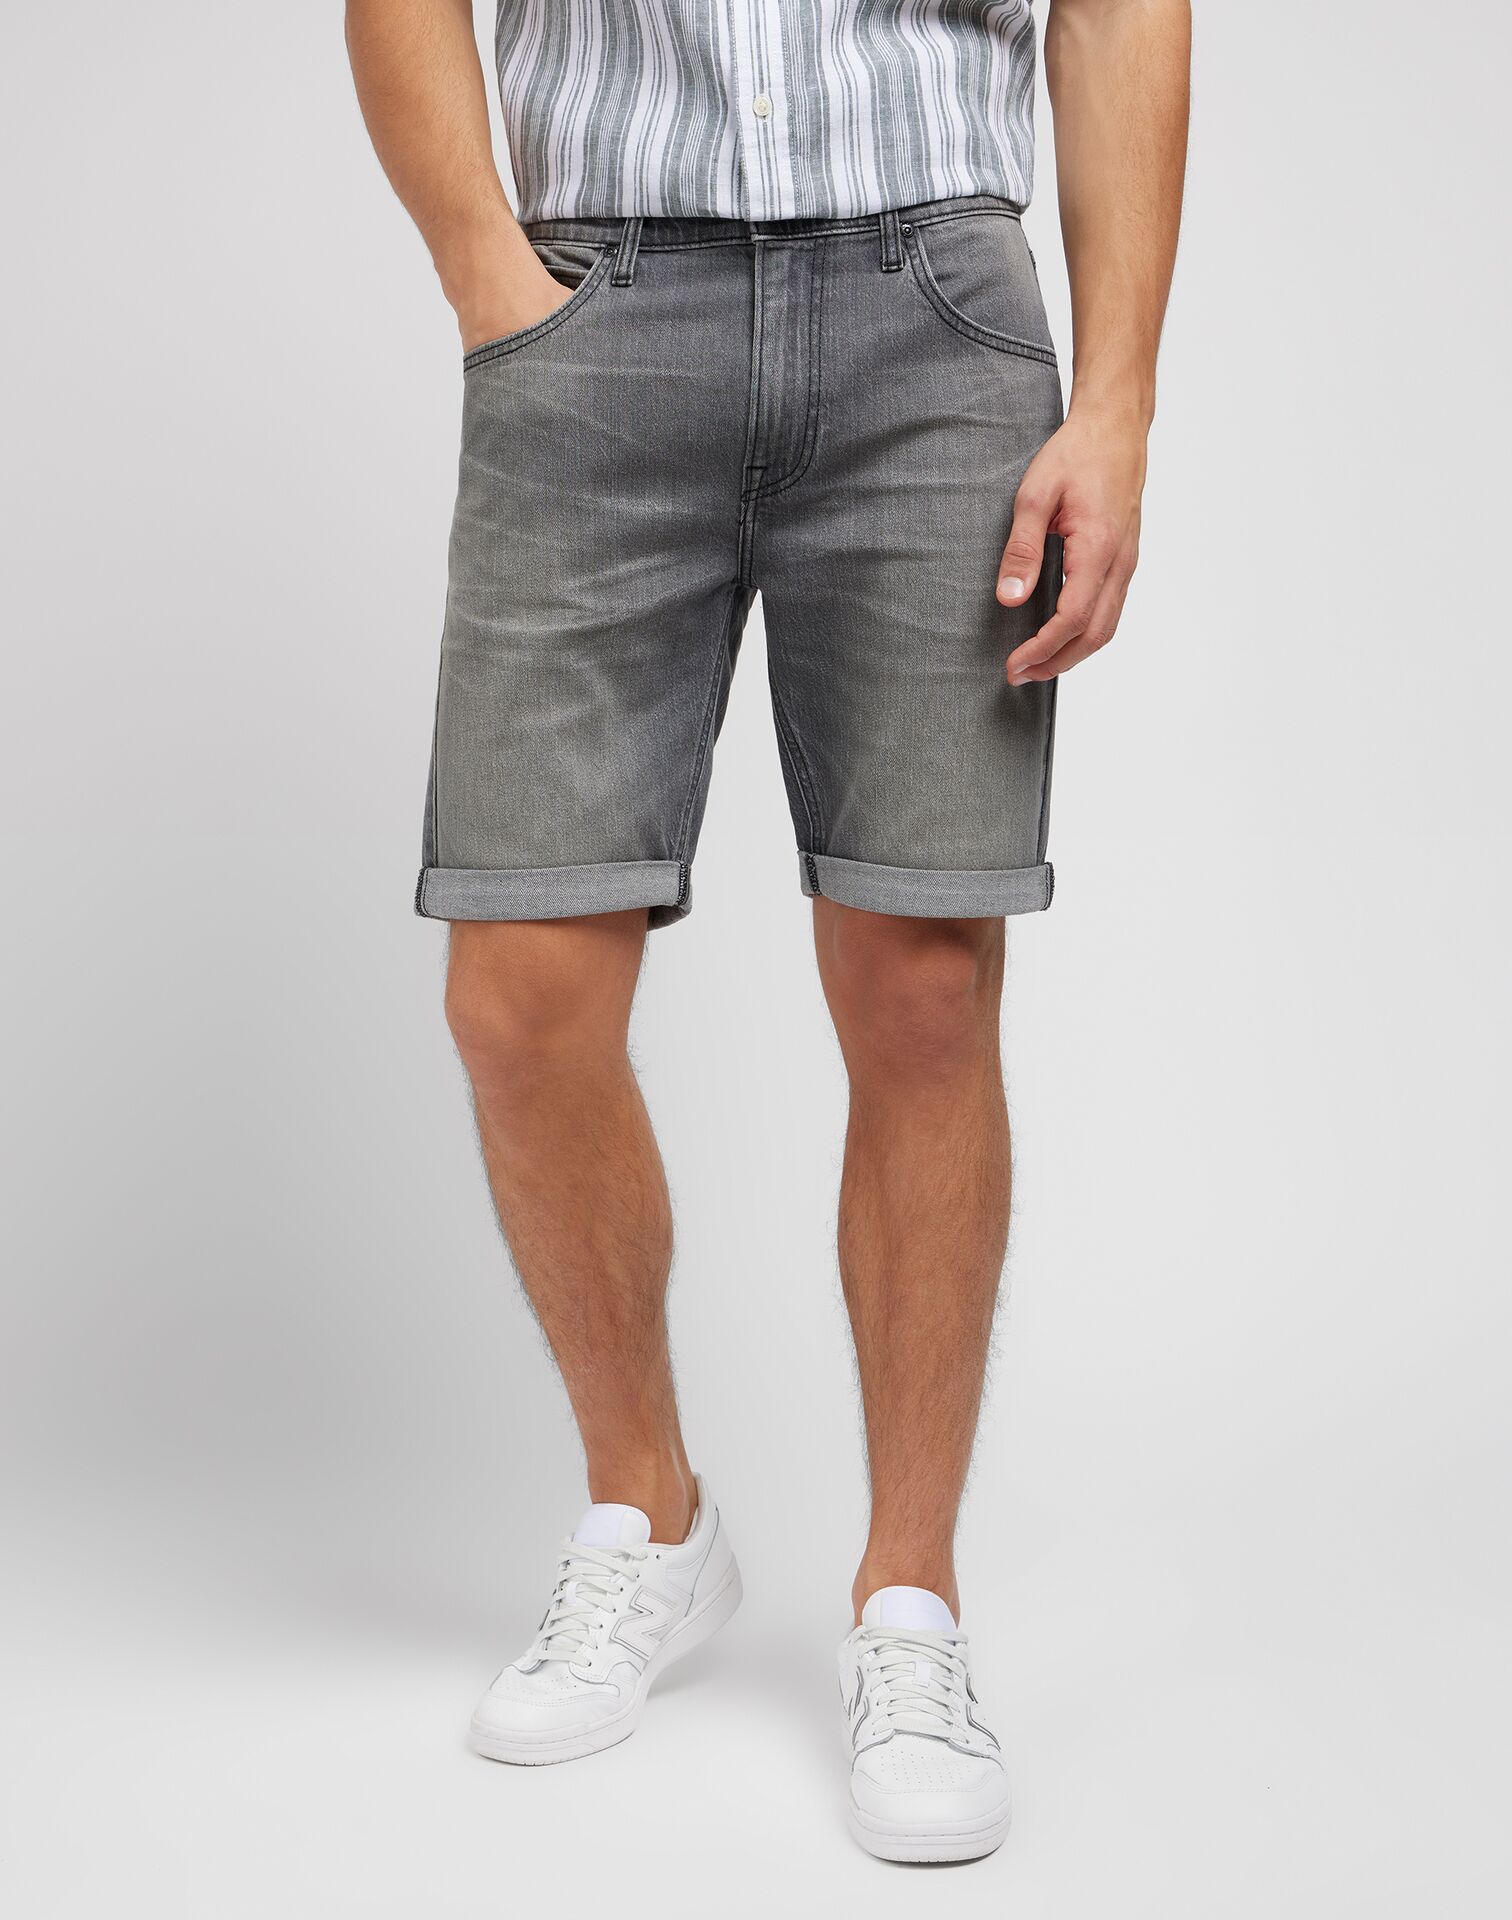 Se Lee 5 Pocket Jeans Shorts - Washed Grey W31 hos monomen